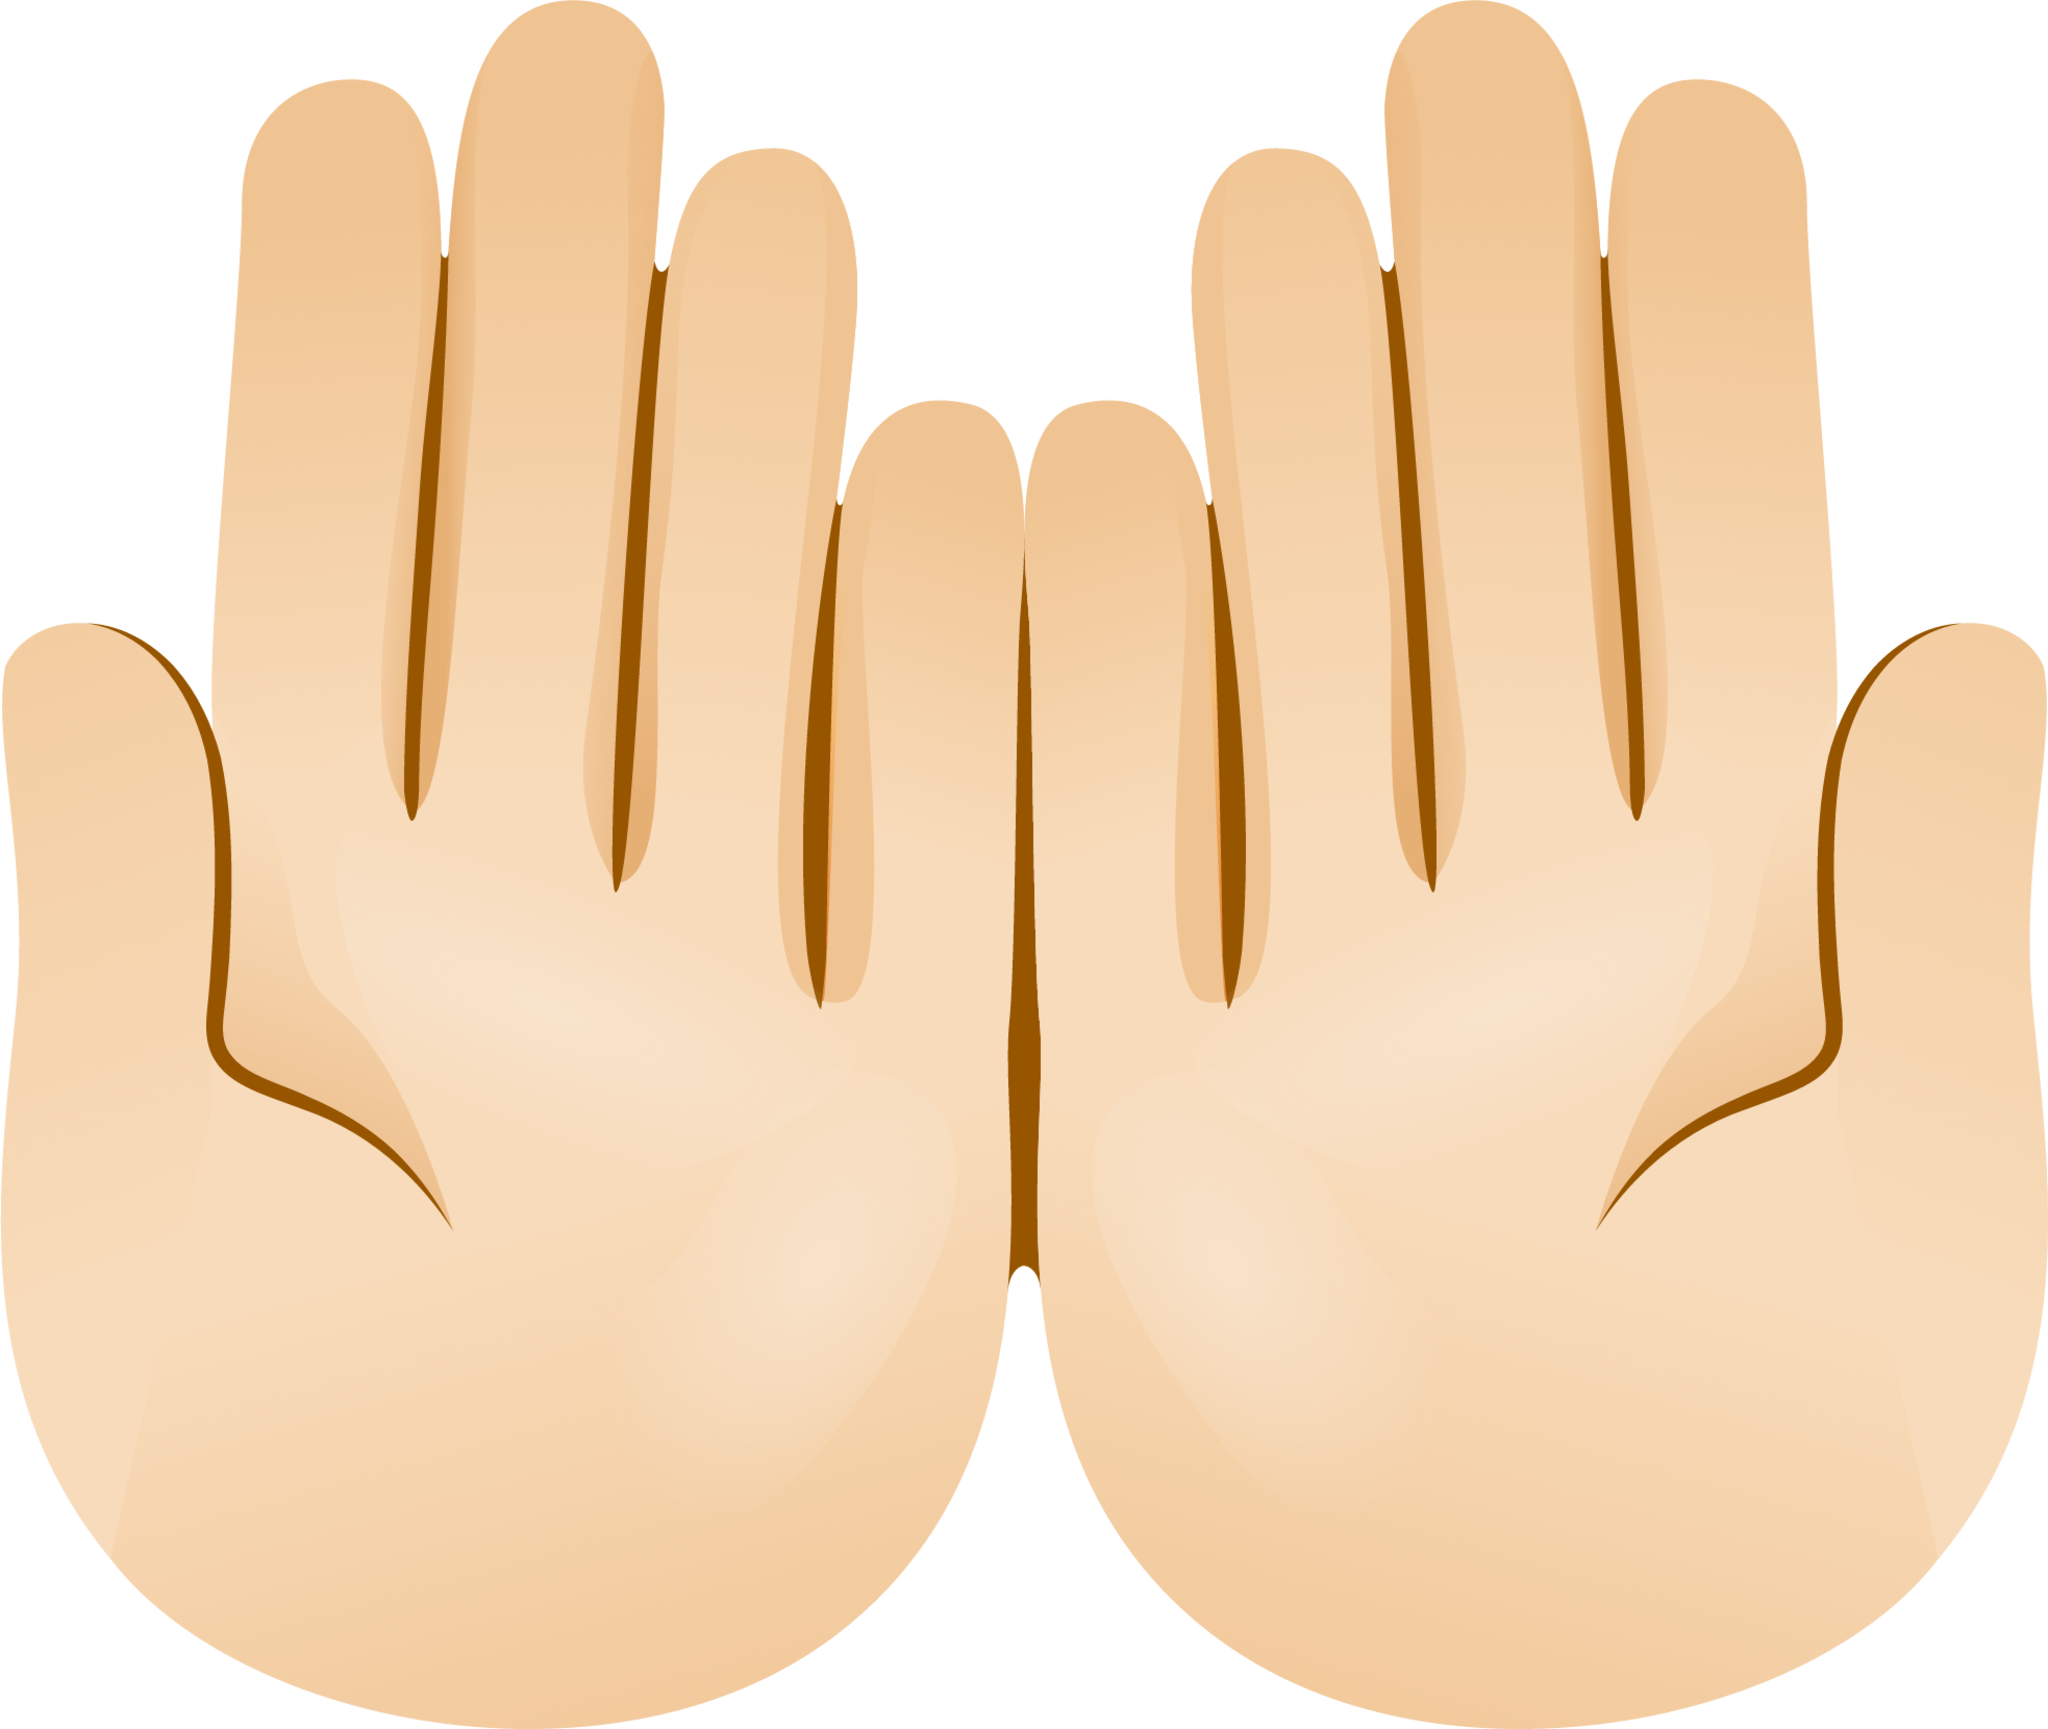 Palms up together skin 1 emoji emoji